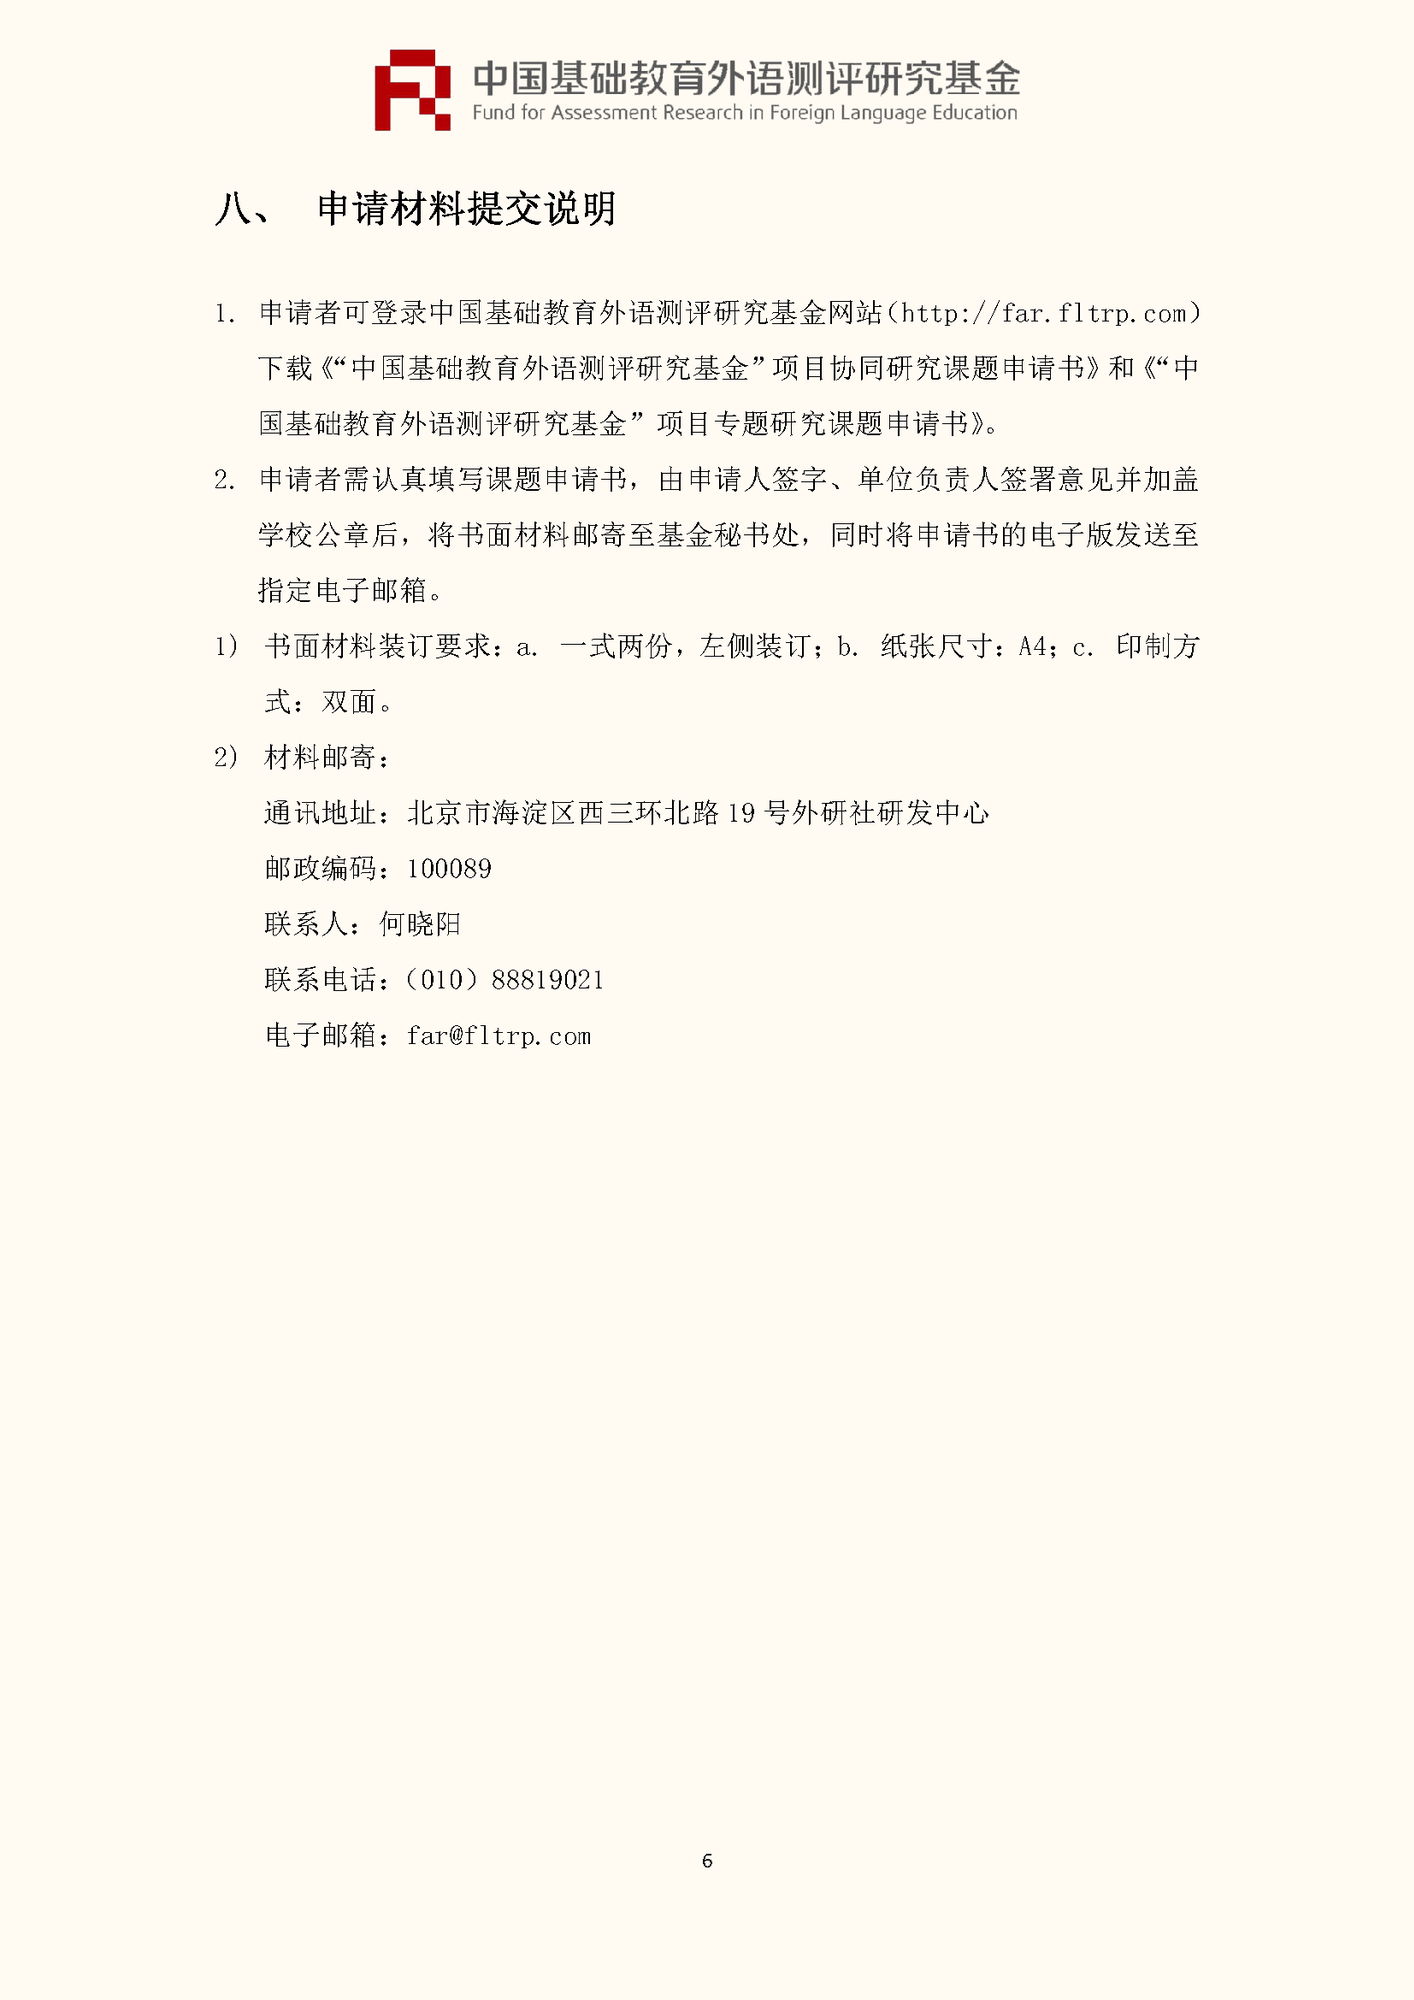 ”中国基础教育外语测评研究基金“项目第四期课题申报指南_页面_08